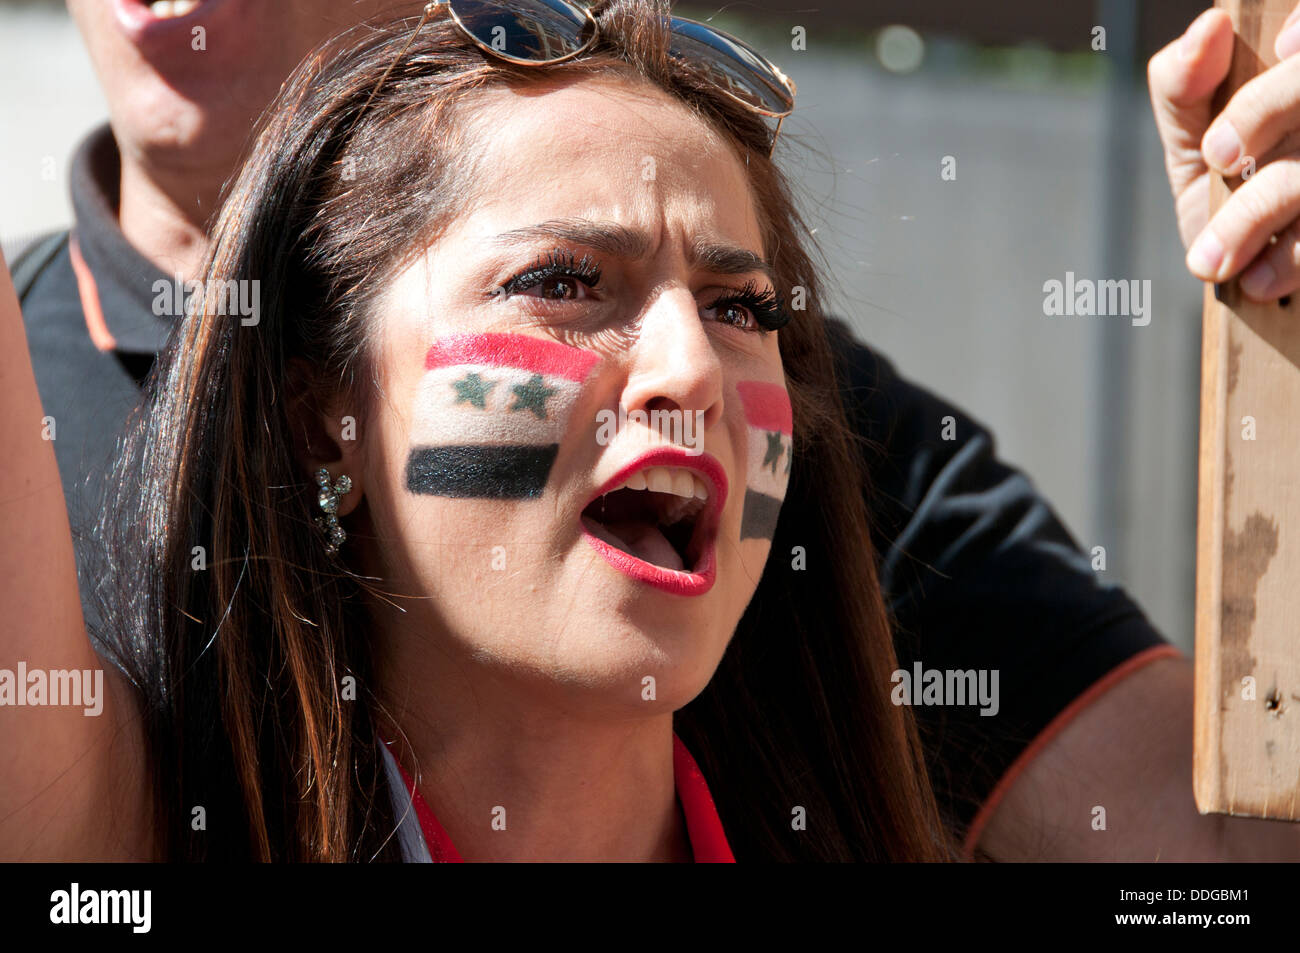 Jeune femme syrienne avec drapeau peint sur sa joue à la manifestation contre l'intervention en Syrie Banque D'Images